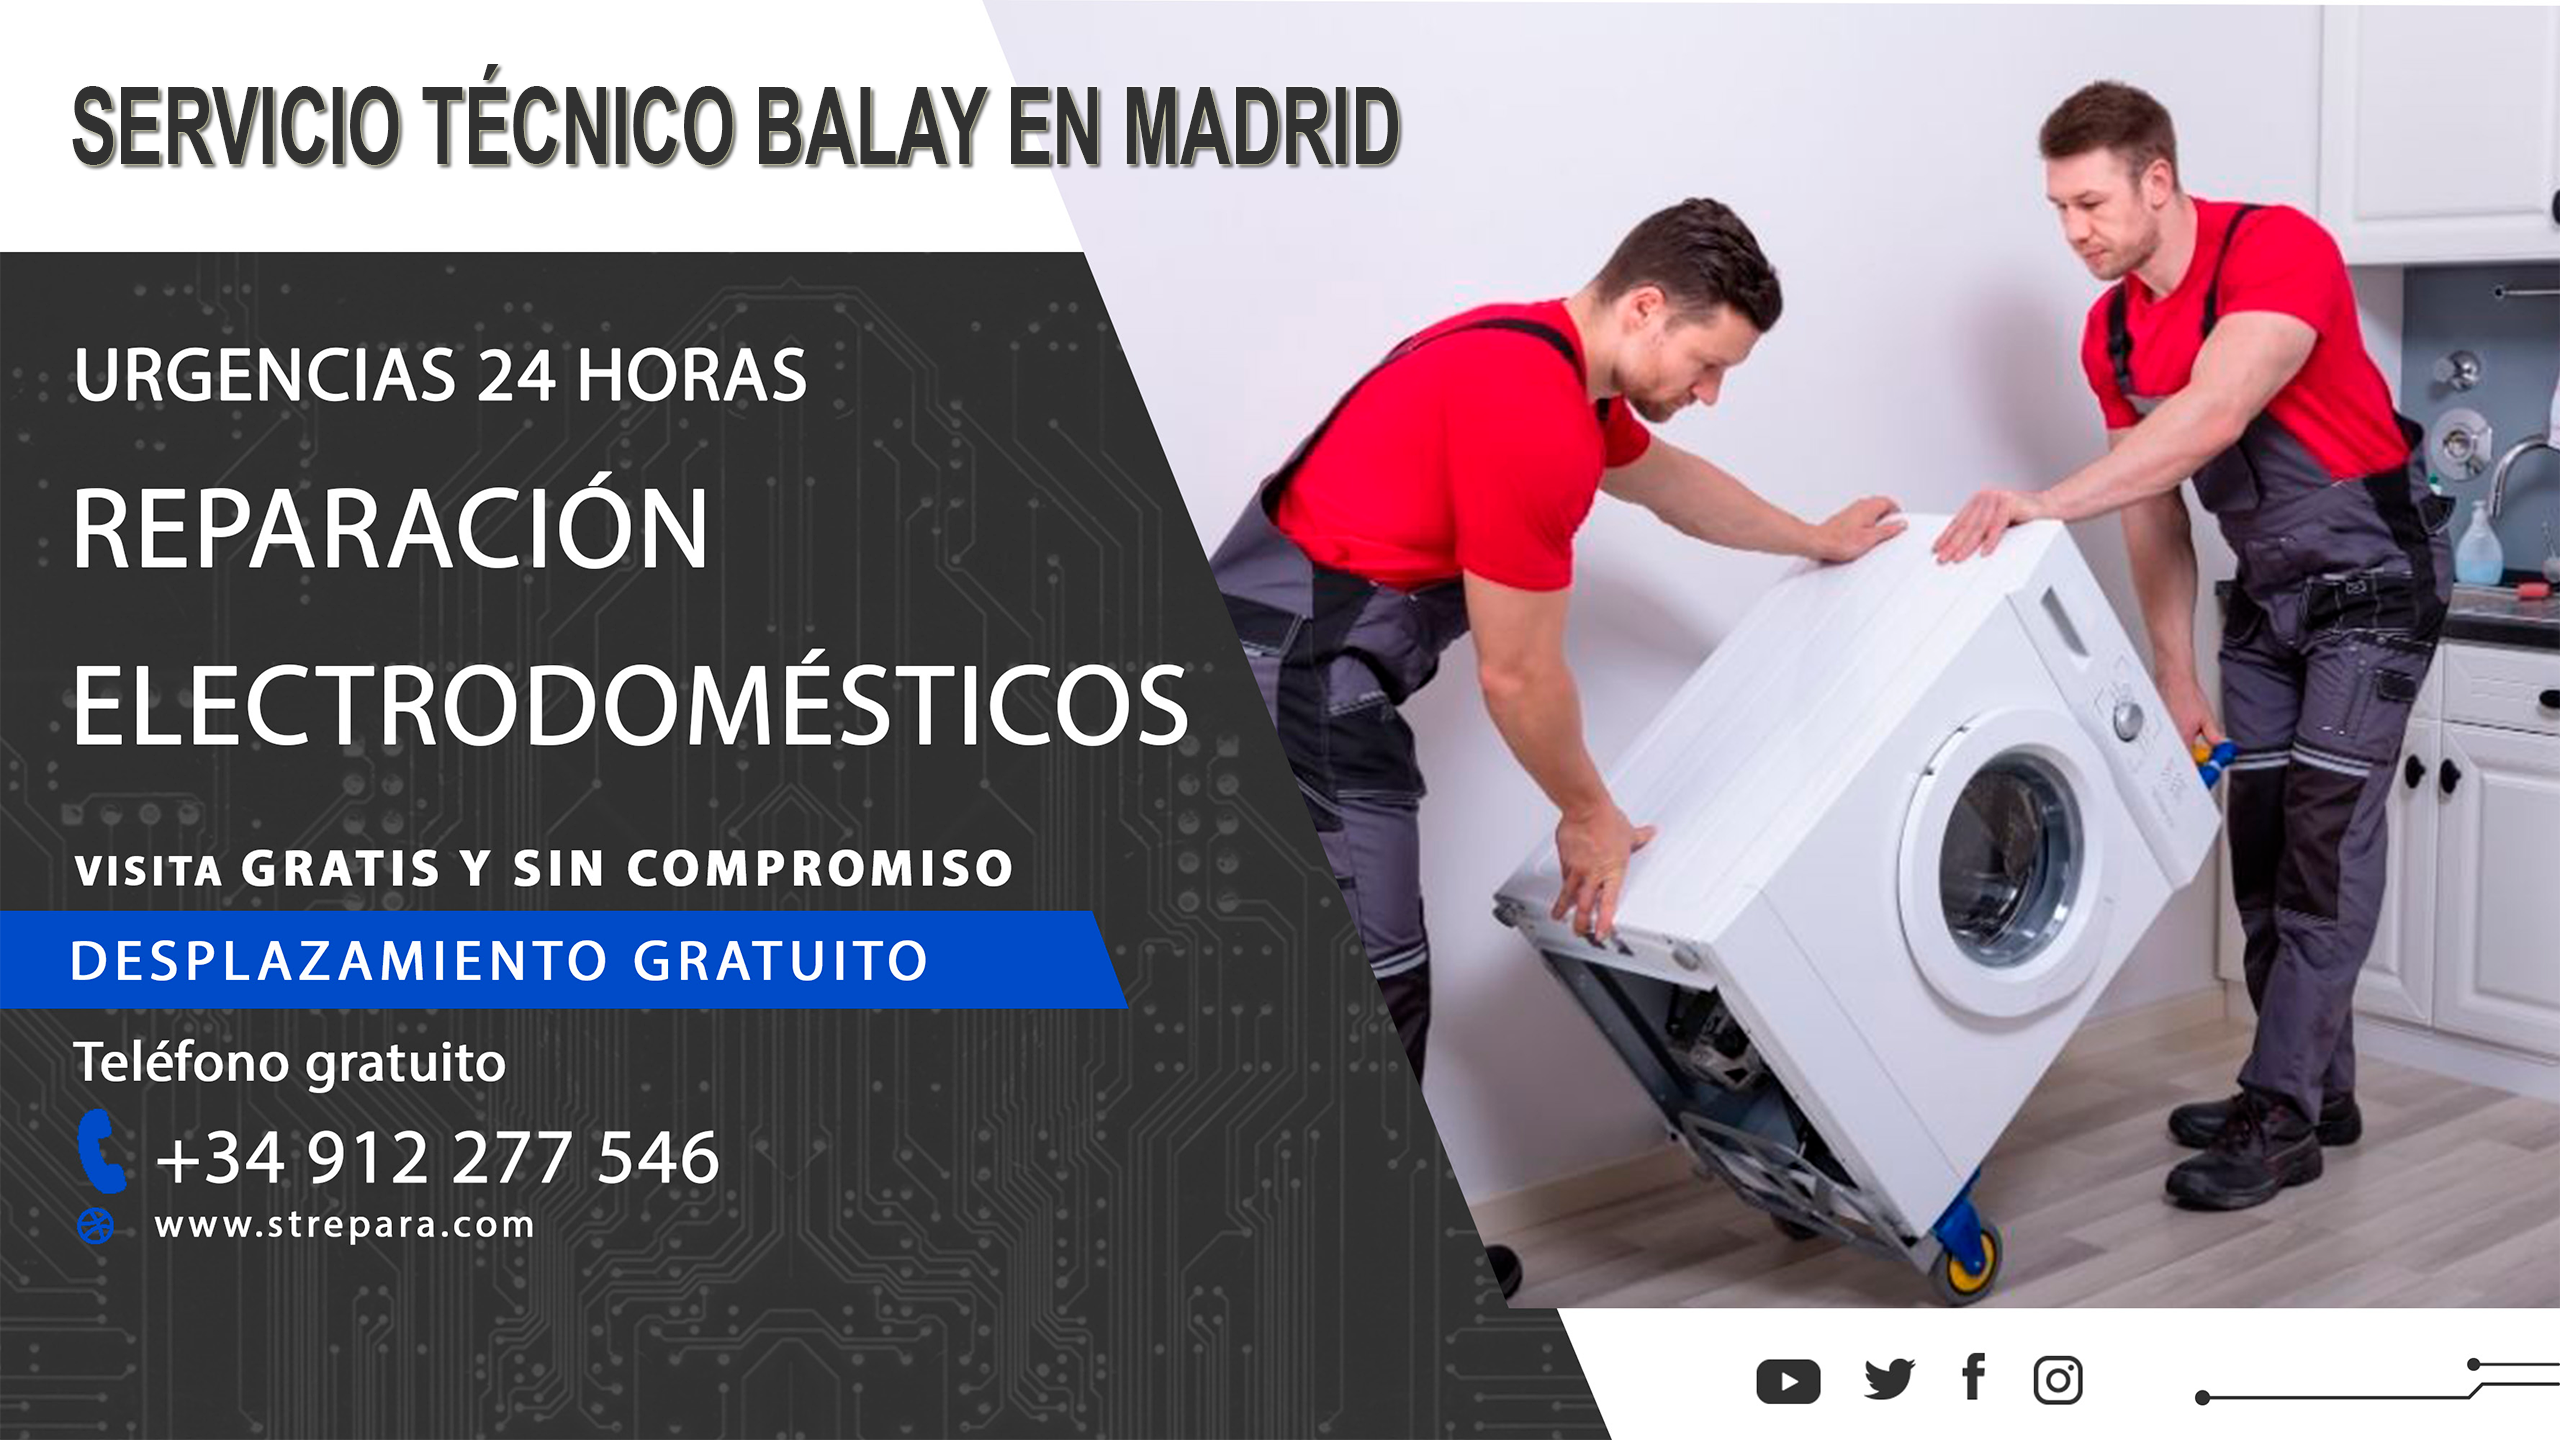 Servicio tecnico Balay en Madrid Banner